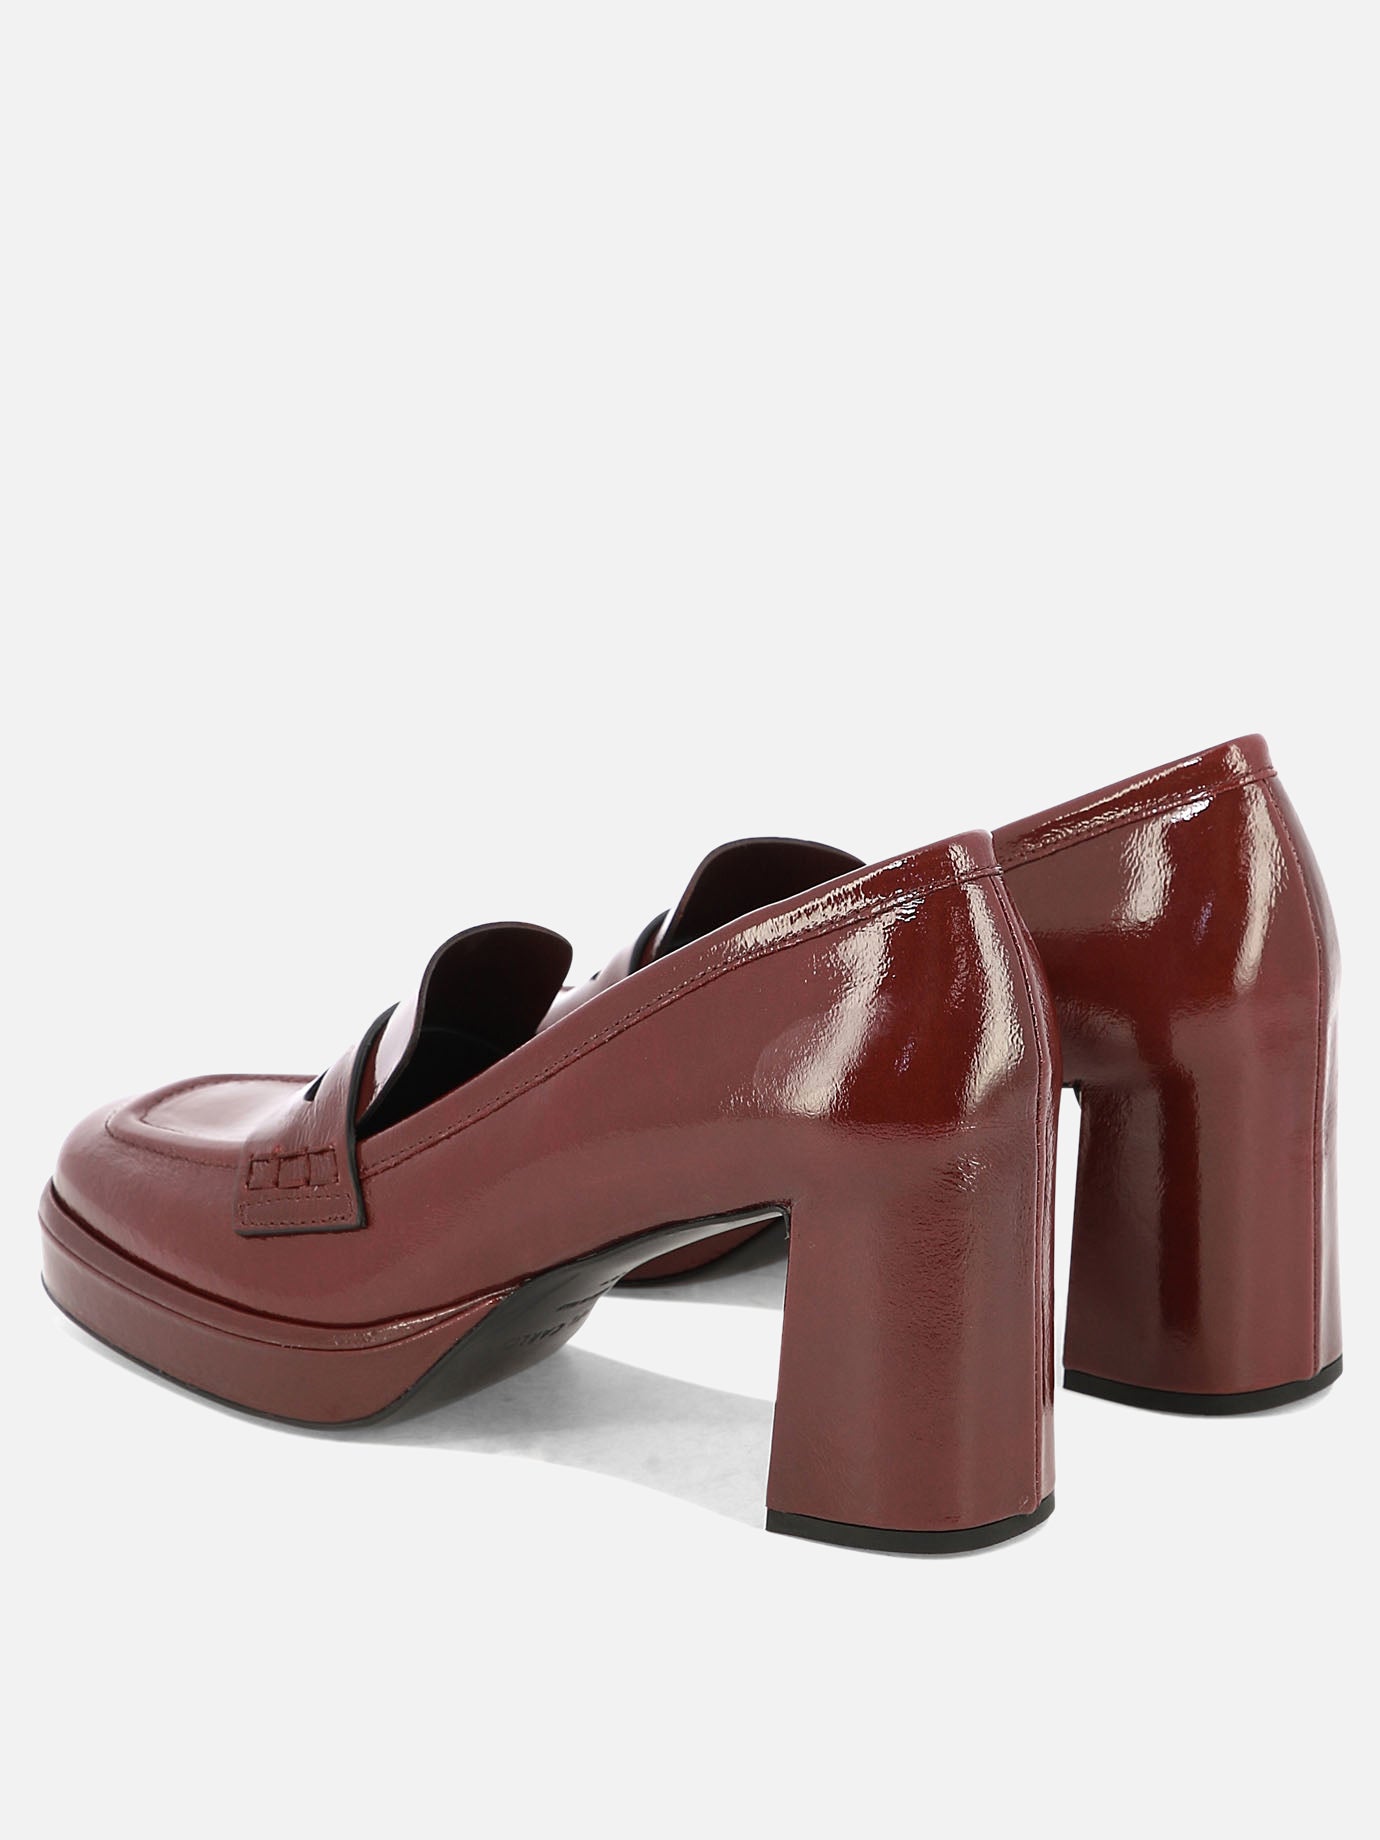 "Lisbona" heeled loafers